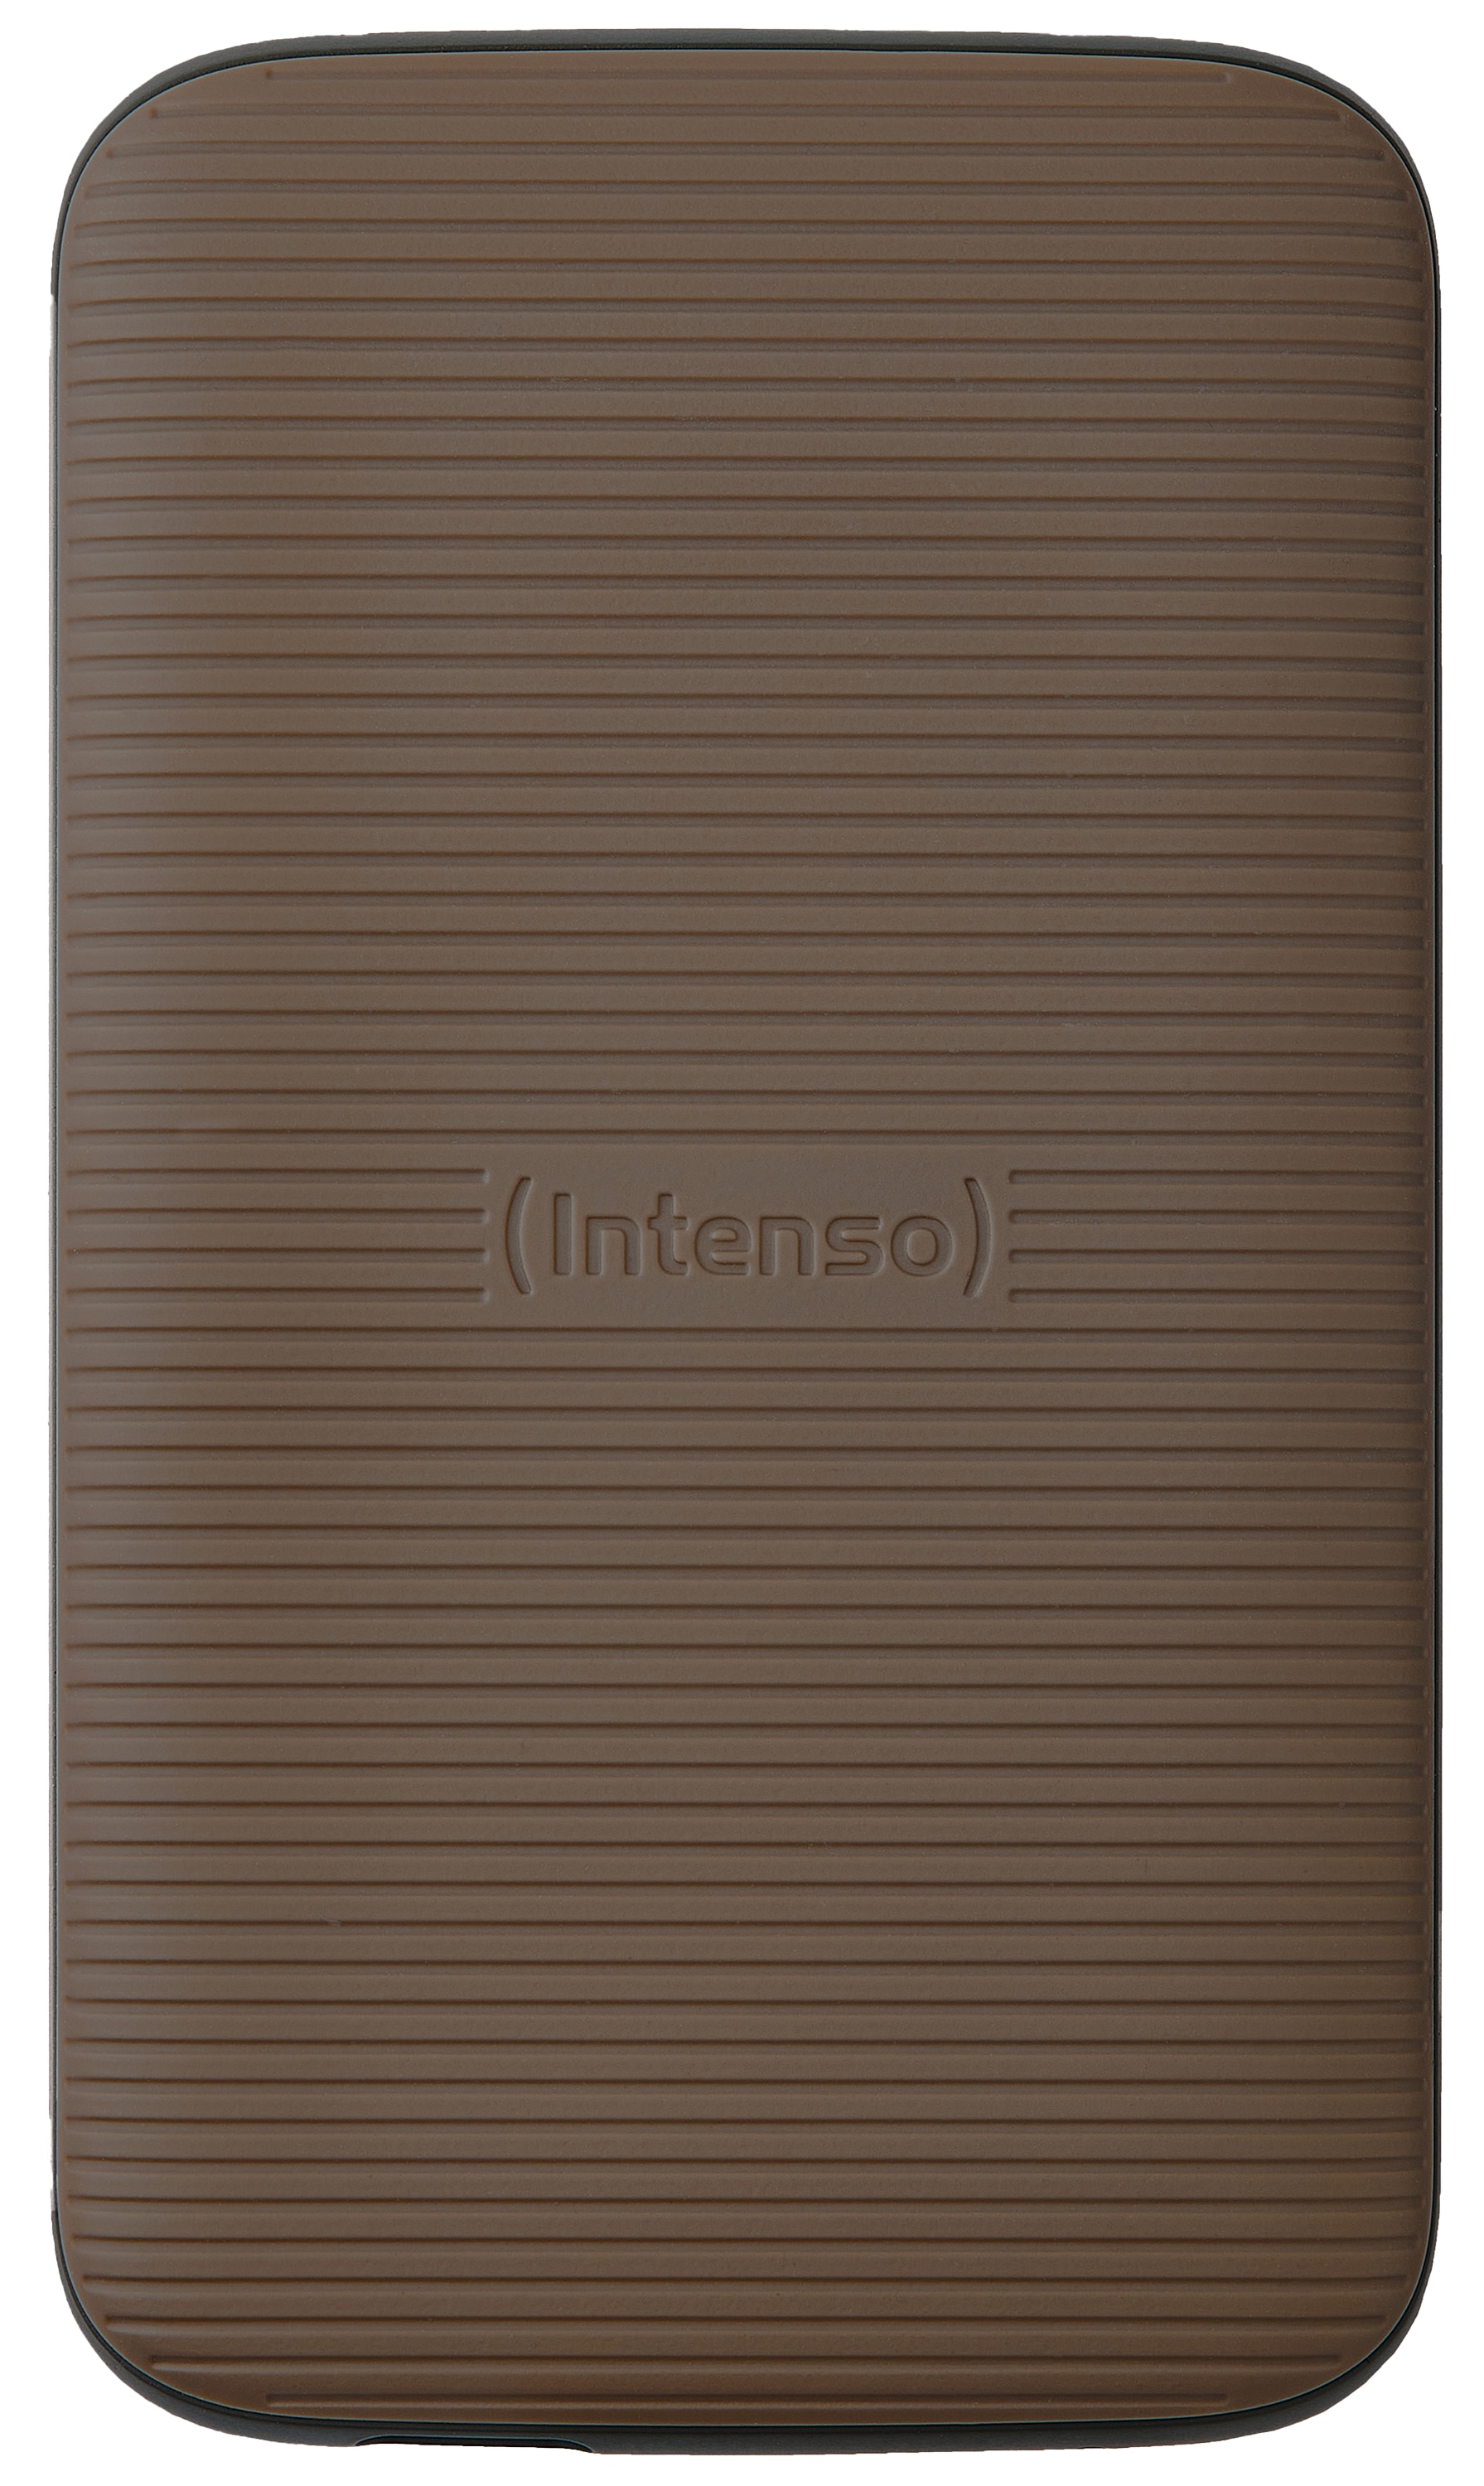 INTENSO USB 3.2-SSD TX500 2TB